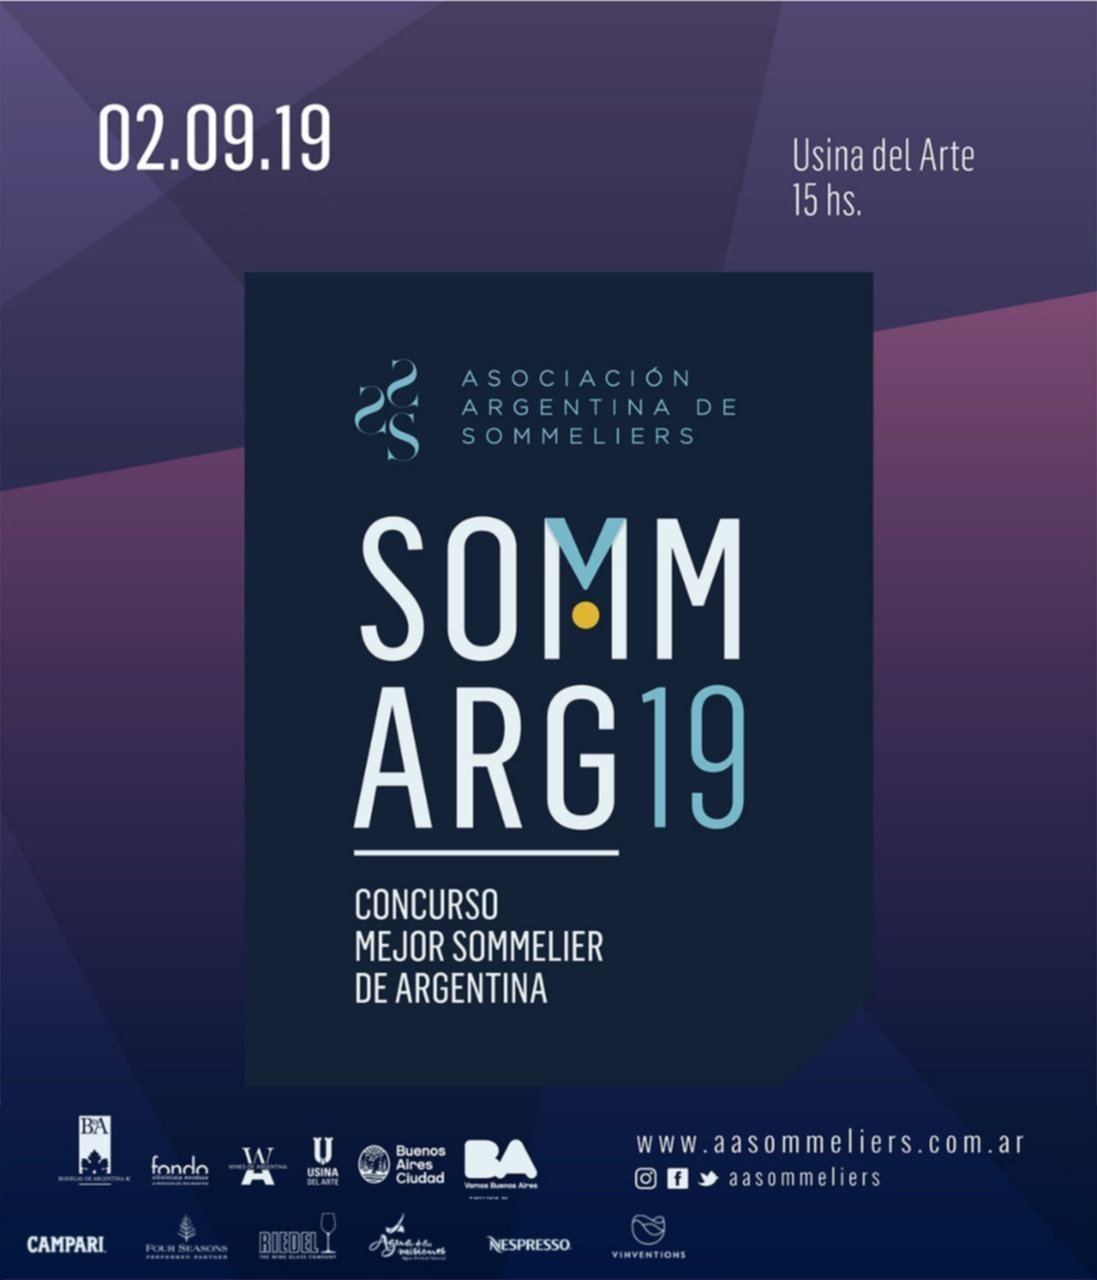 Llega el concurso Mejor Sommelier de Argentina 2019